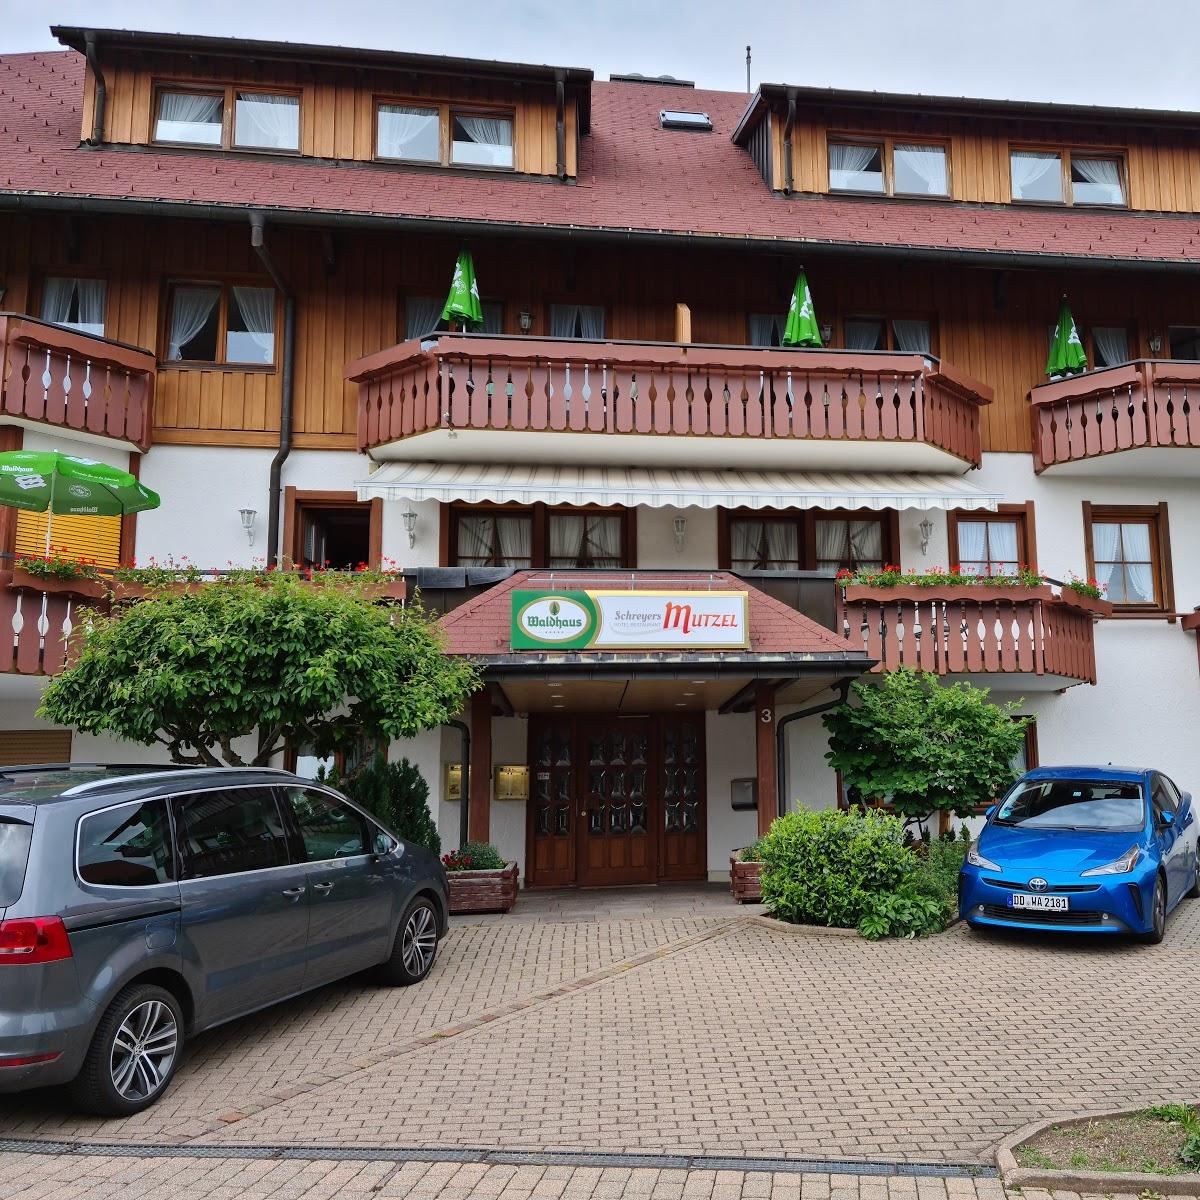 Restaurant "Hotel Mutzel" in Schluchsee